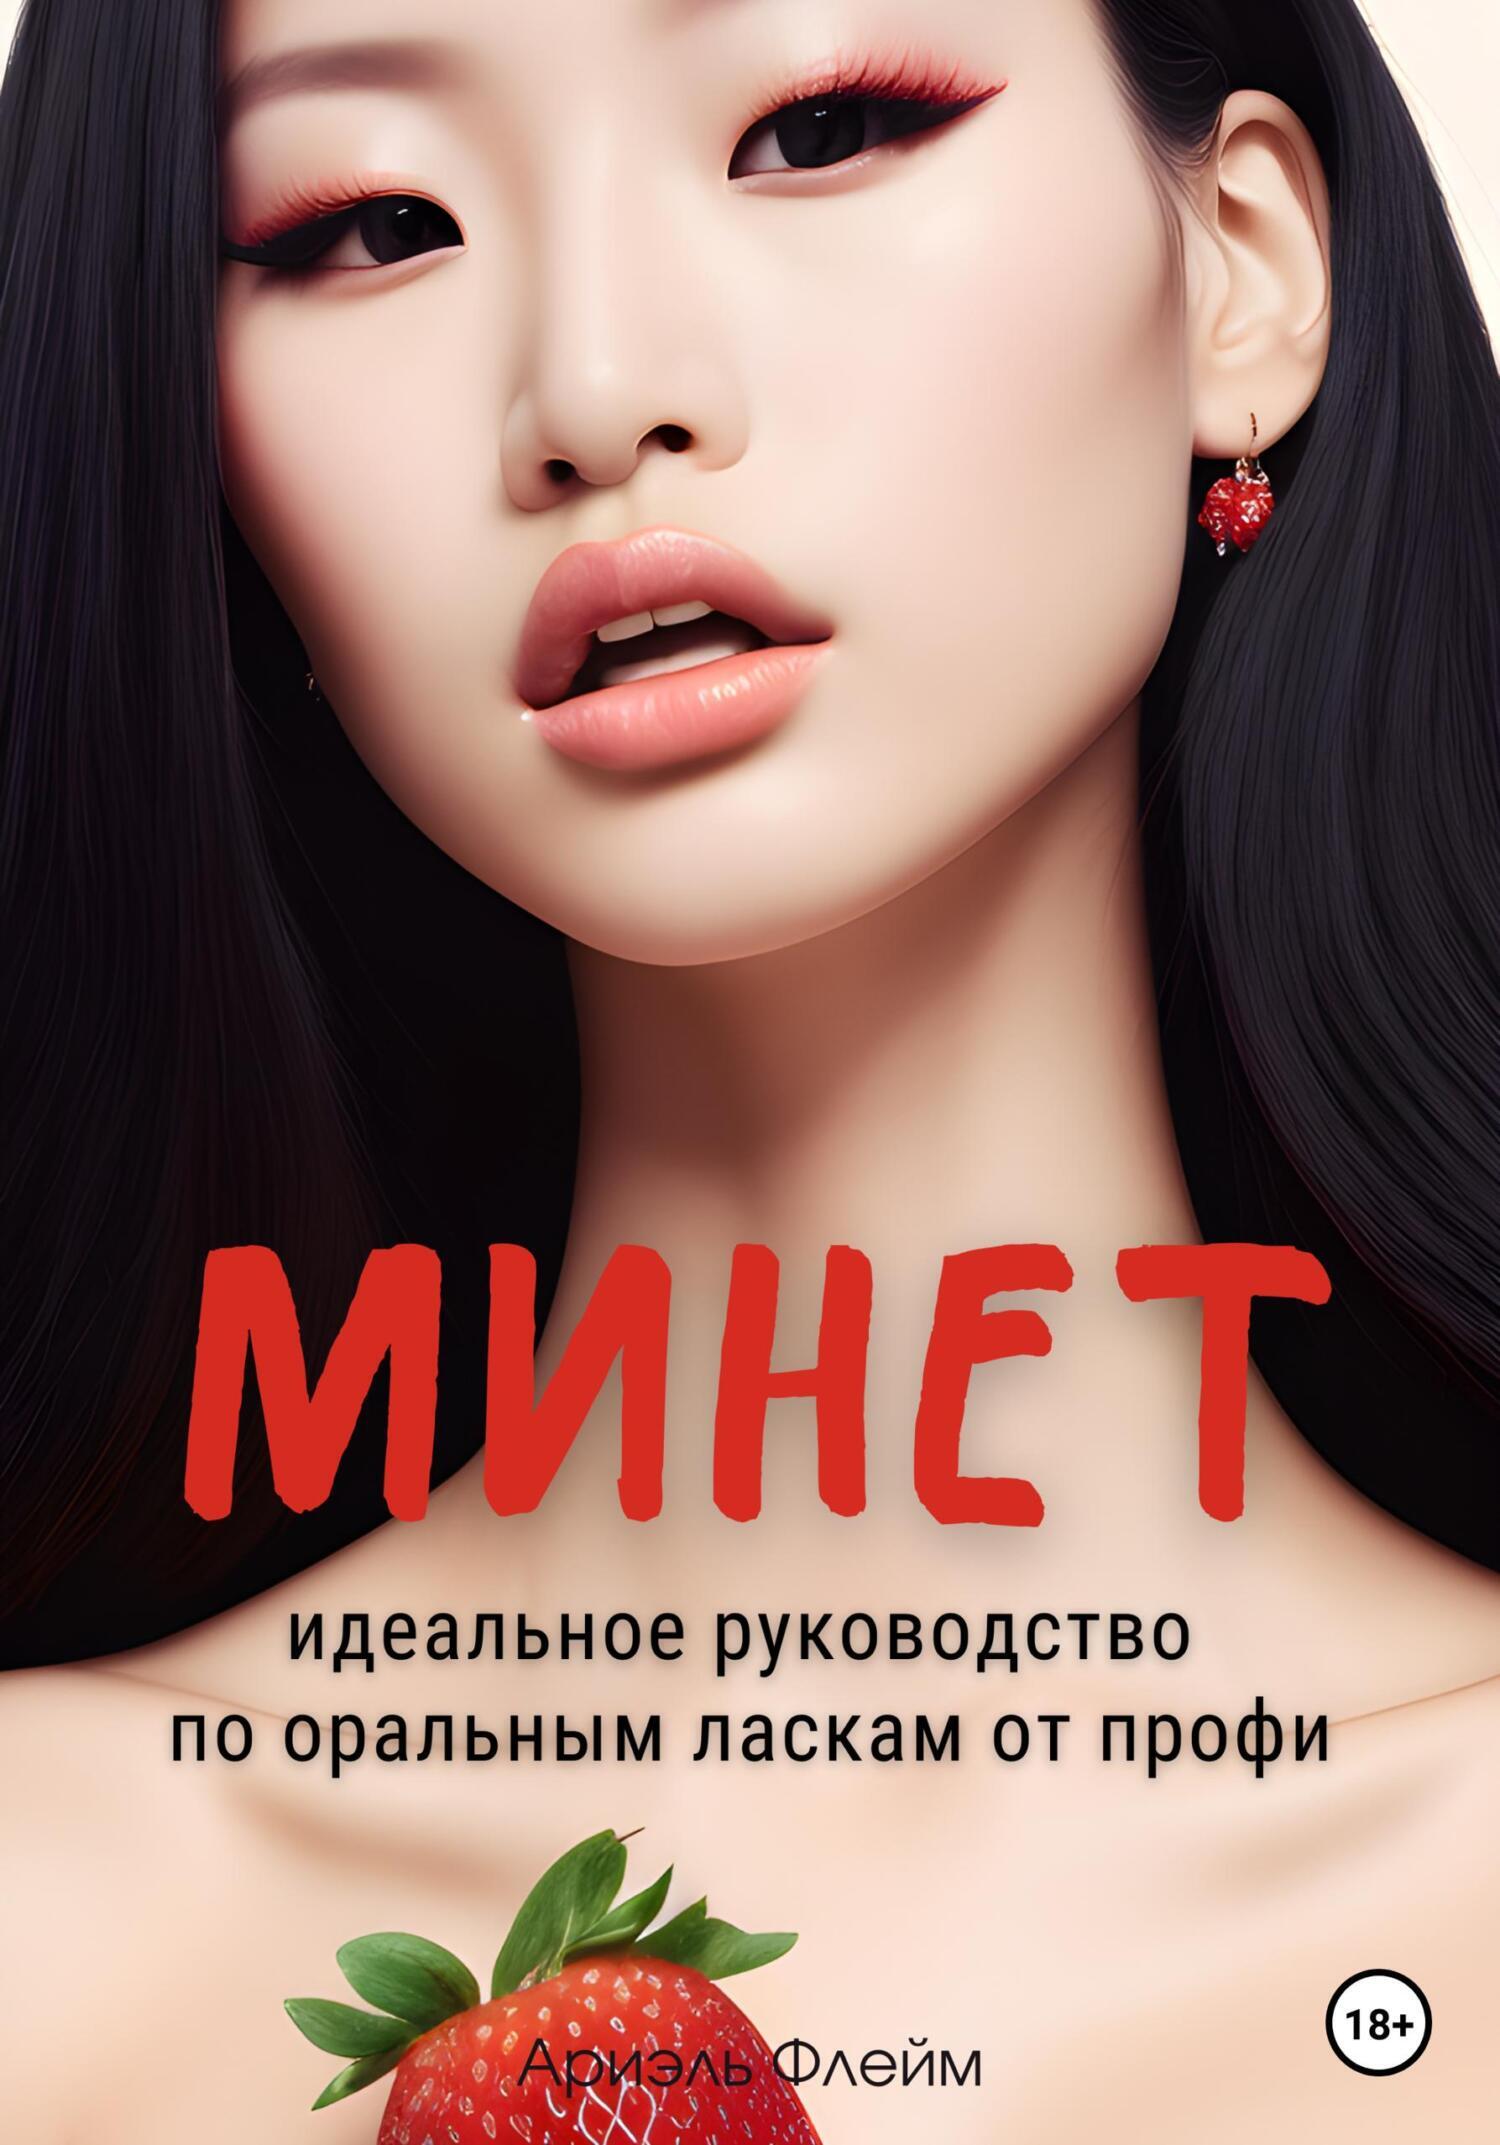 Профи минет - отличная коллекция русского порно на massage-couples.ru